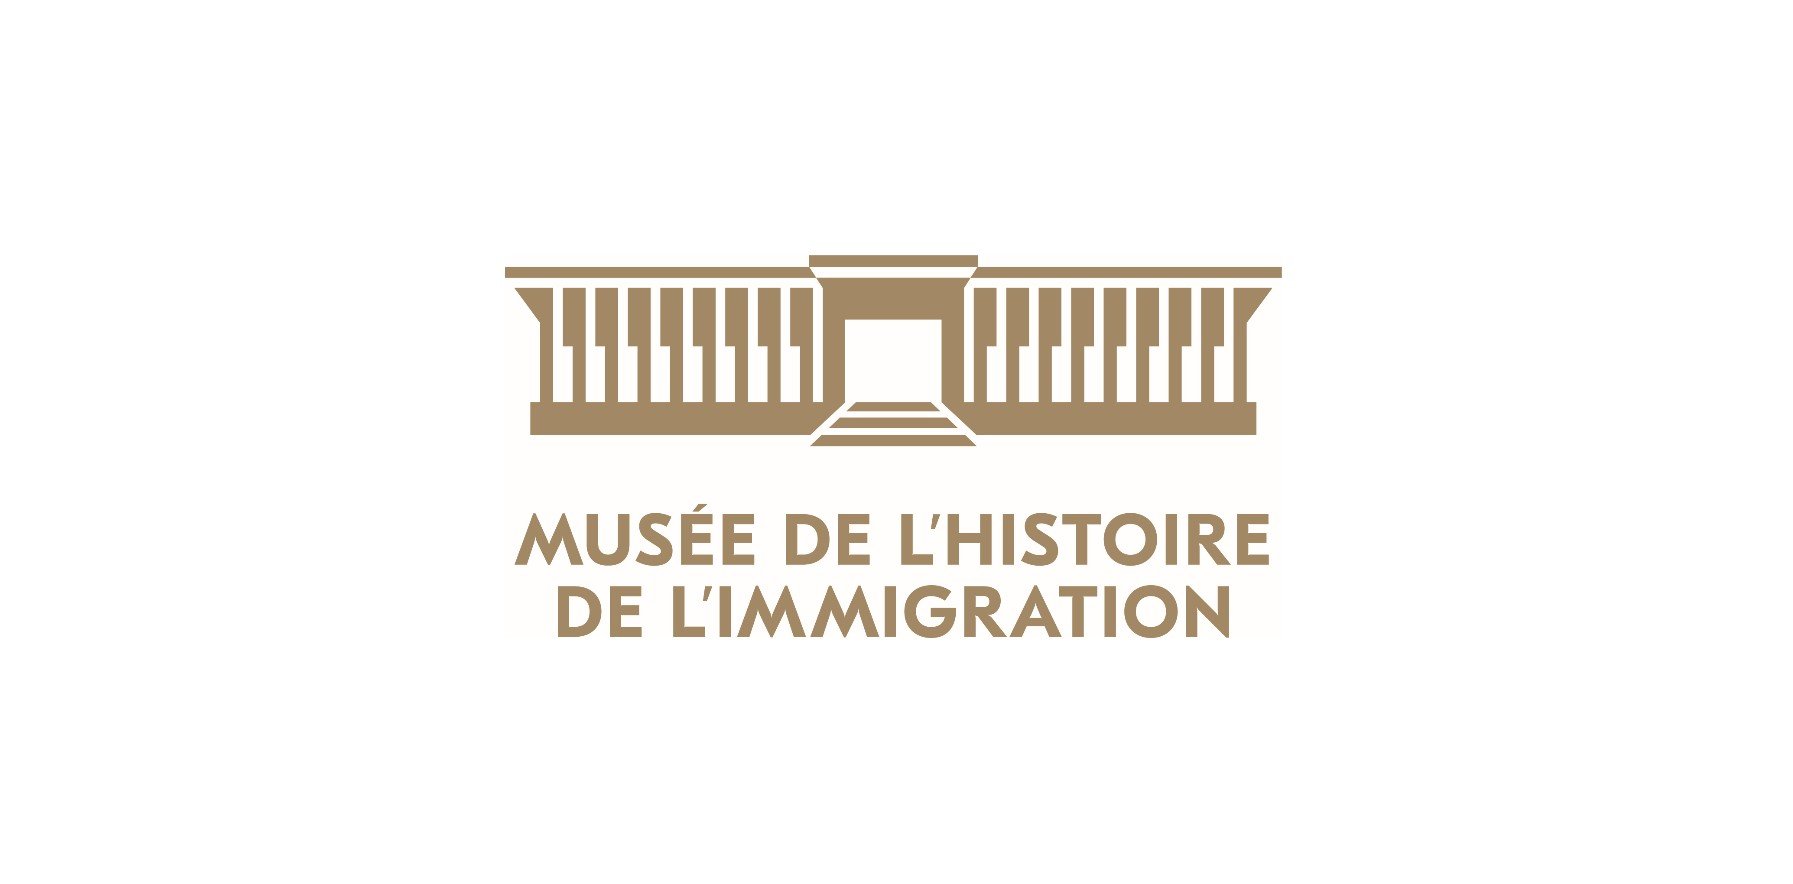 Etablissement public du Palais de la Porte Dorée / Musée national de l'histoire de l'immigration